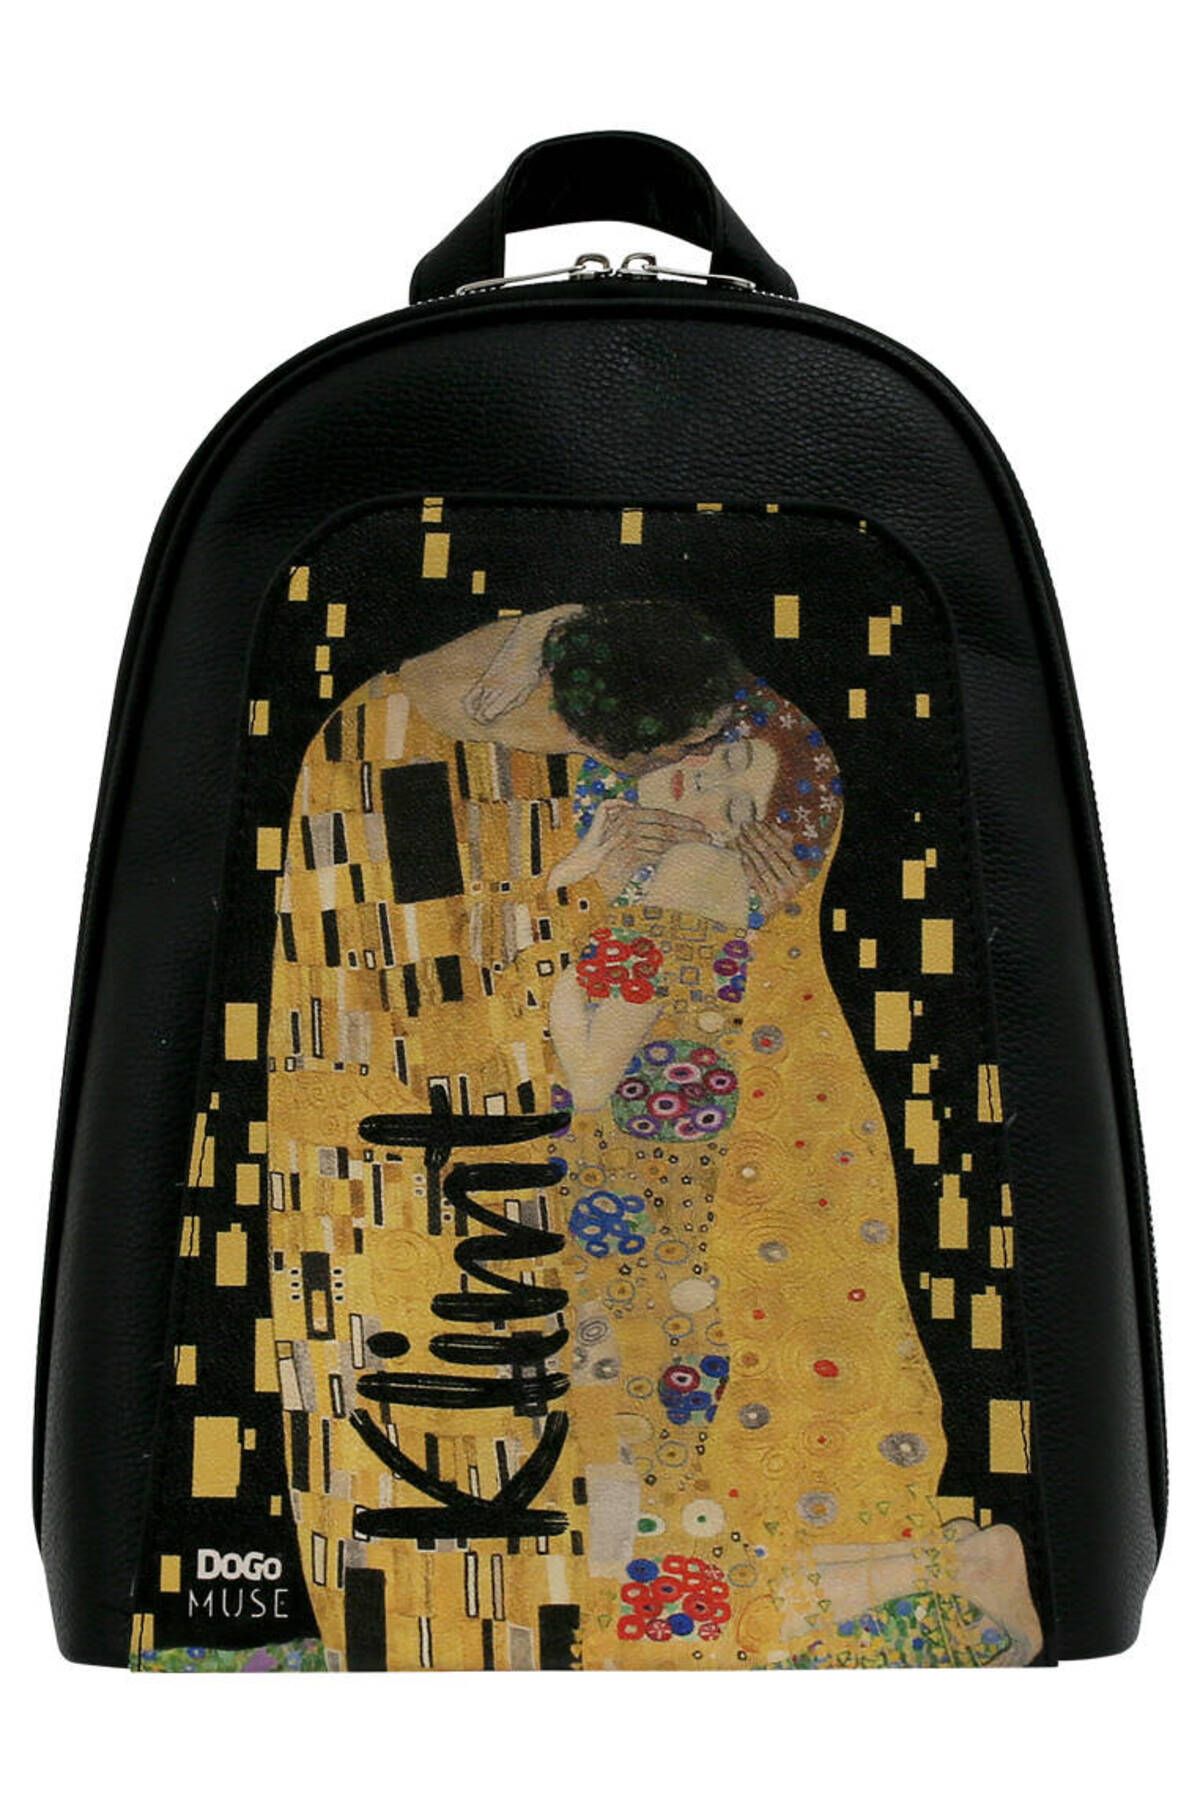 Dogo Kadın Vegan Deri Siyah Sırt Çantası - Gustav Klimt The Kiss Muse Tasarım